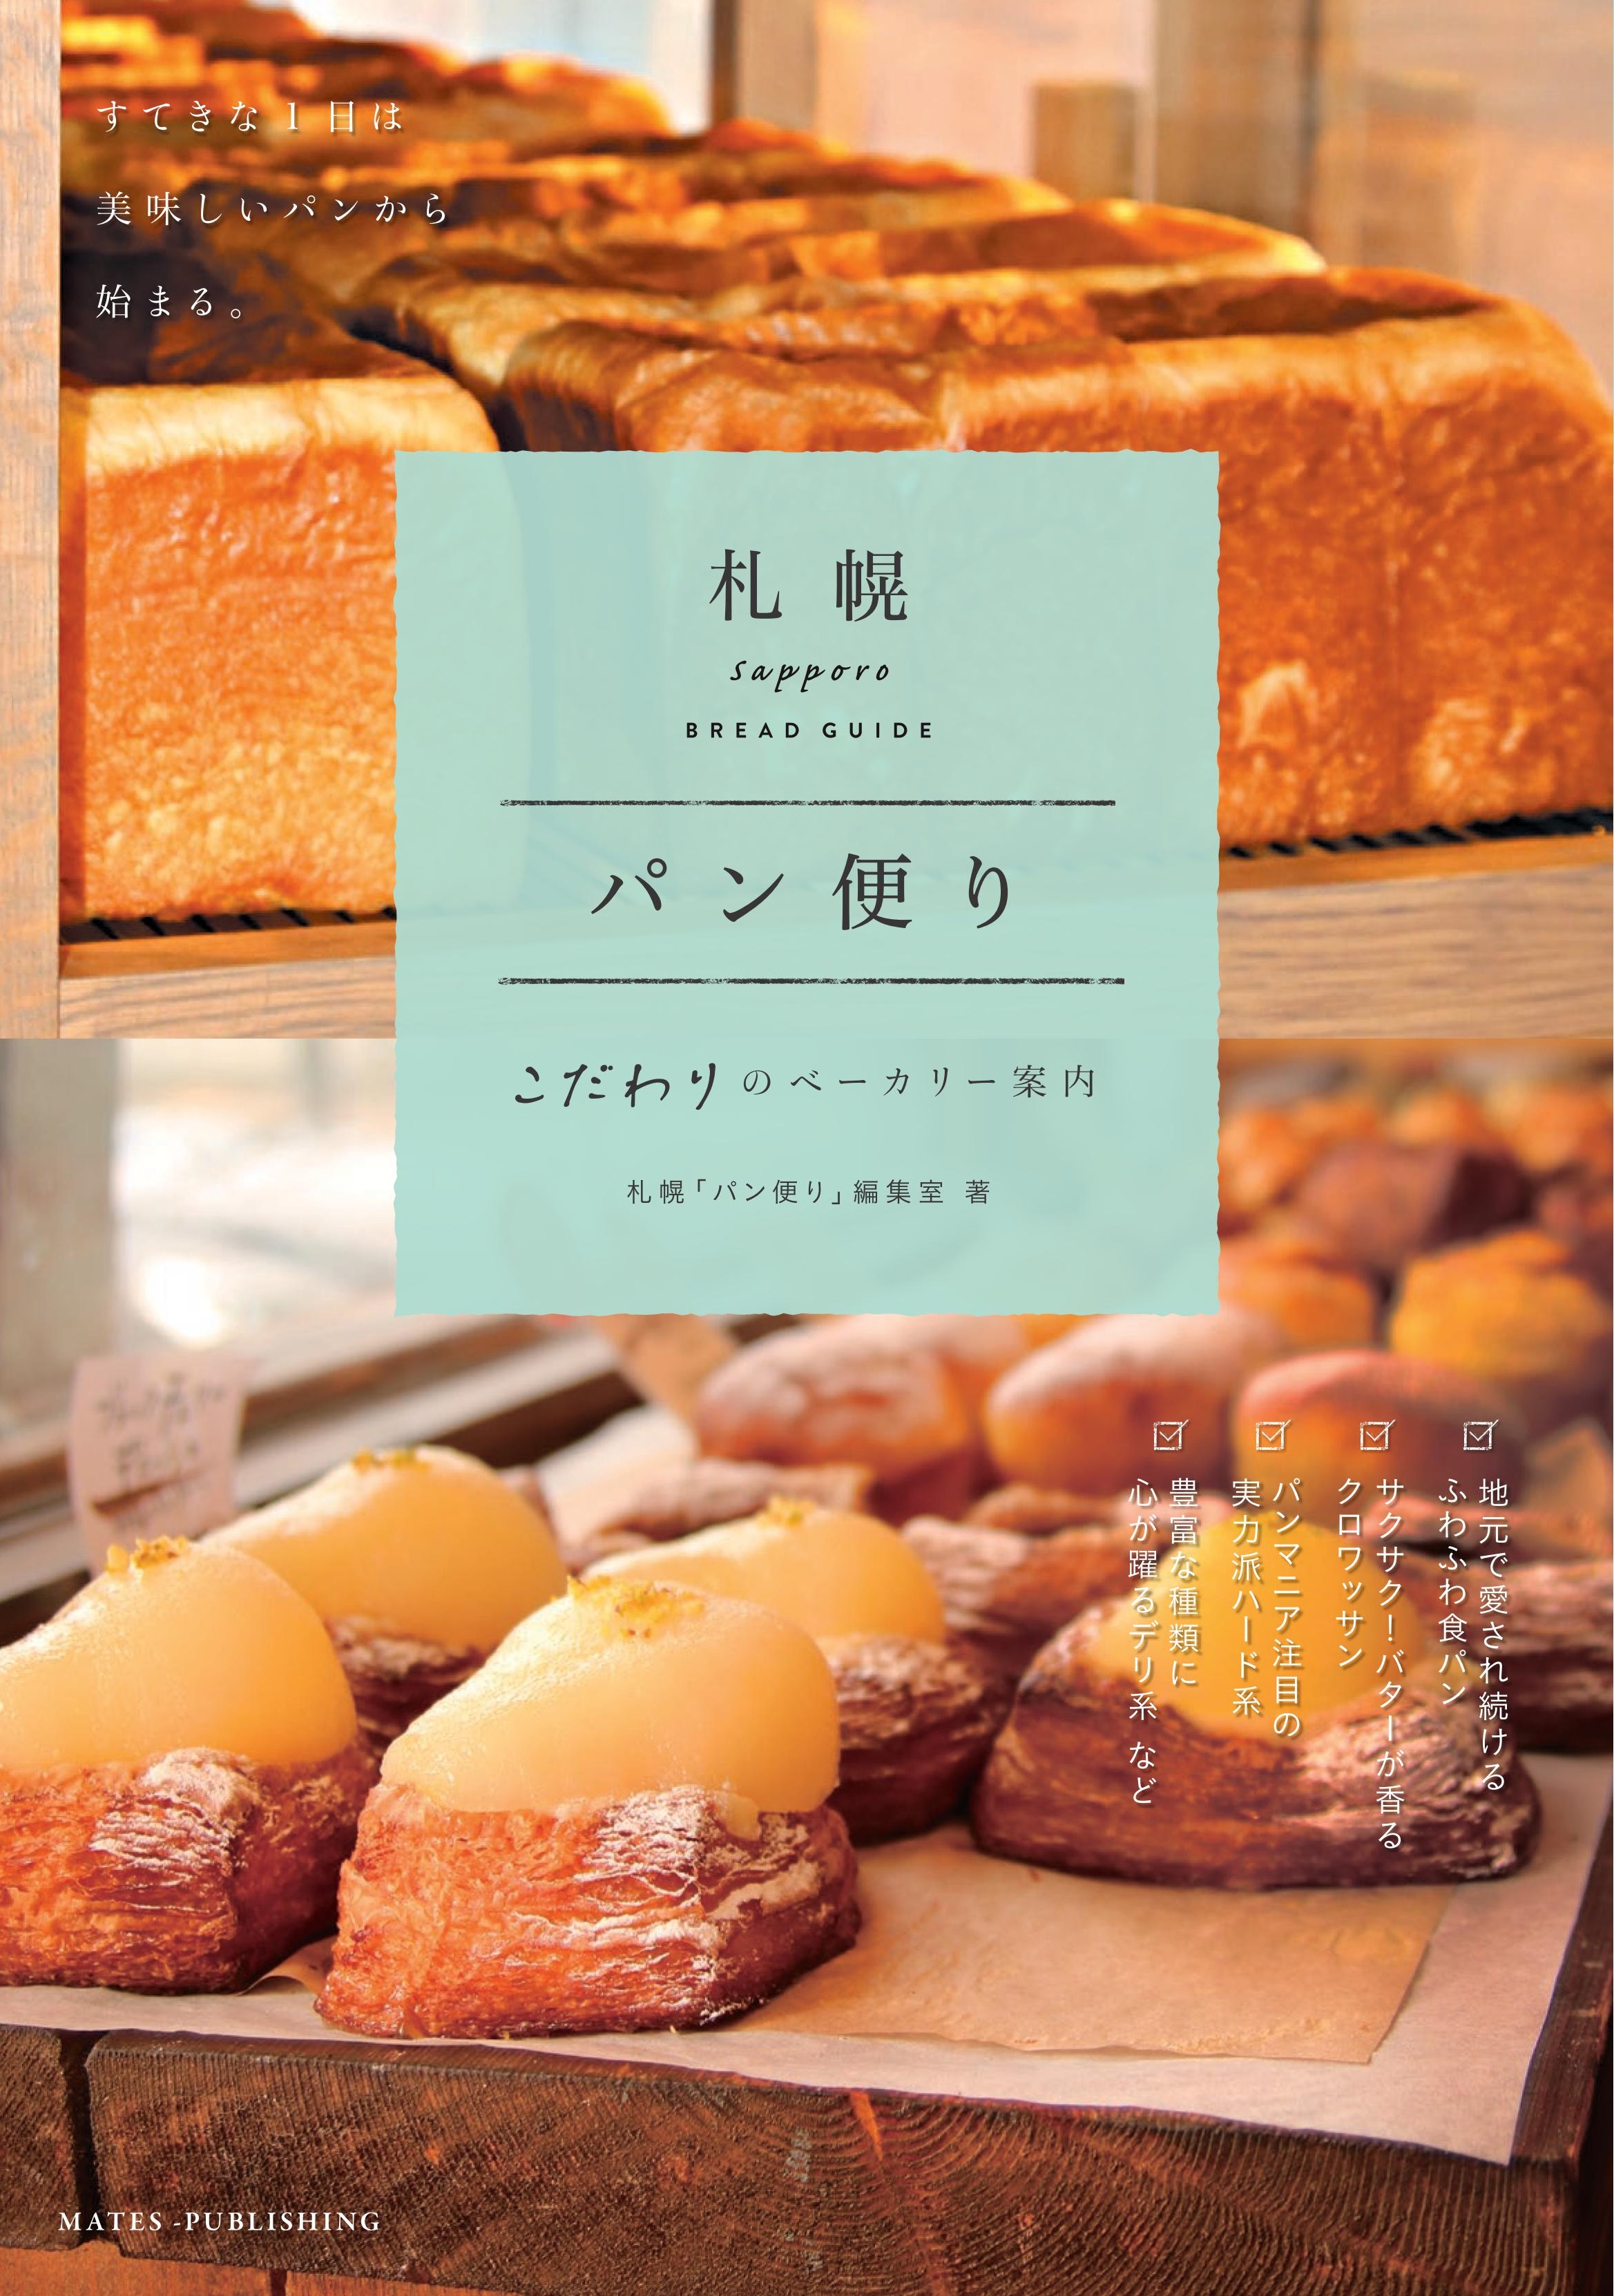 札幌 パン便り こだわりのベーカリーの商品画像